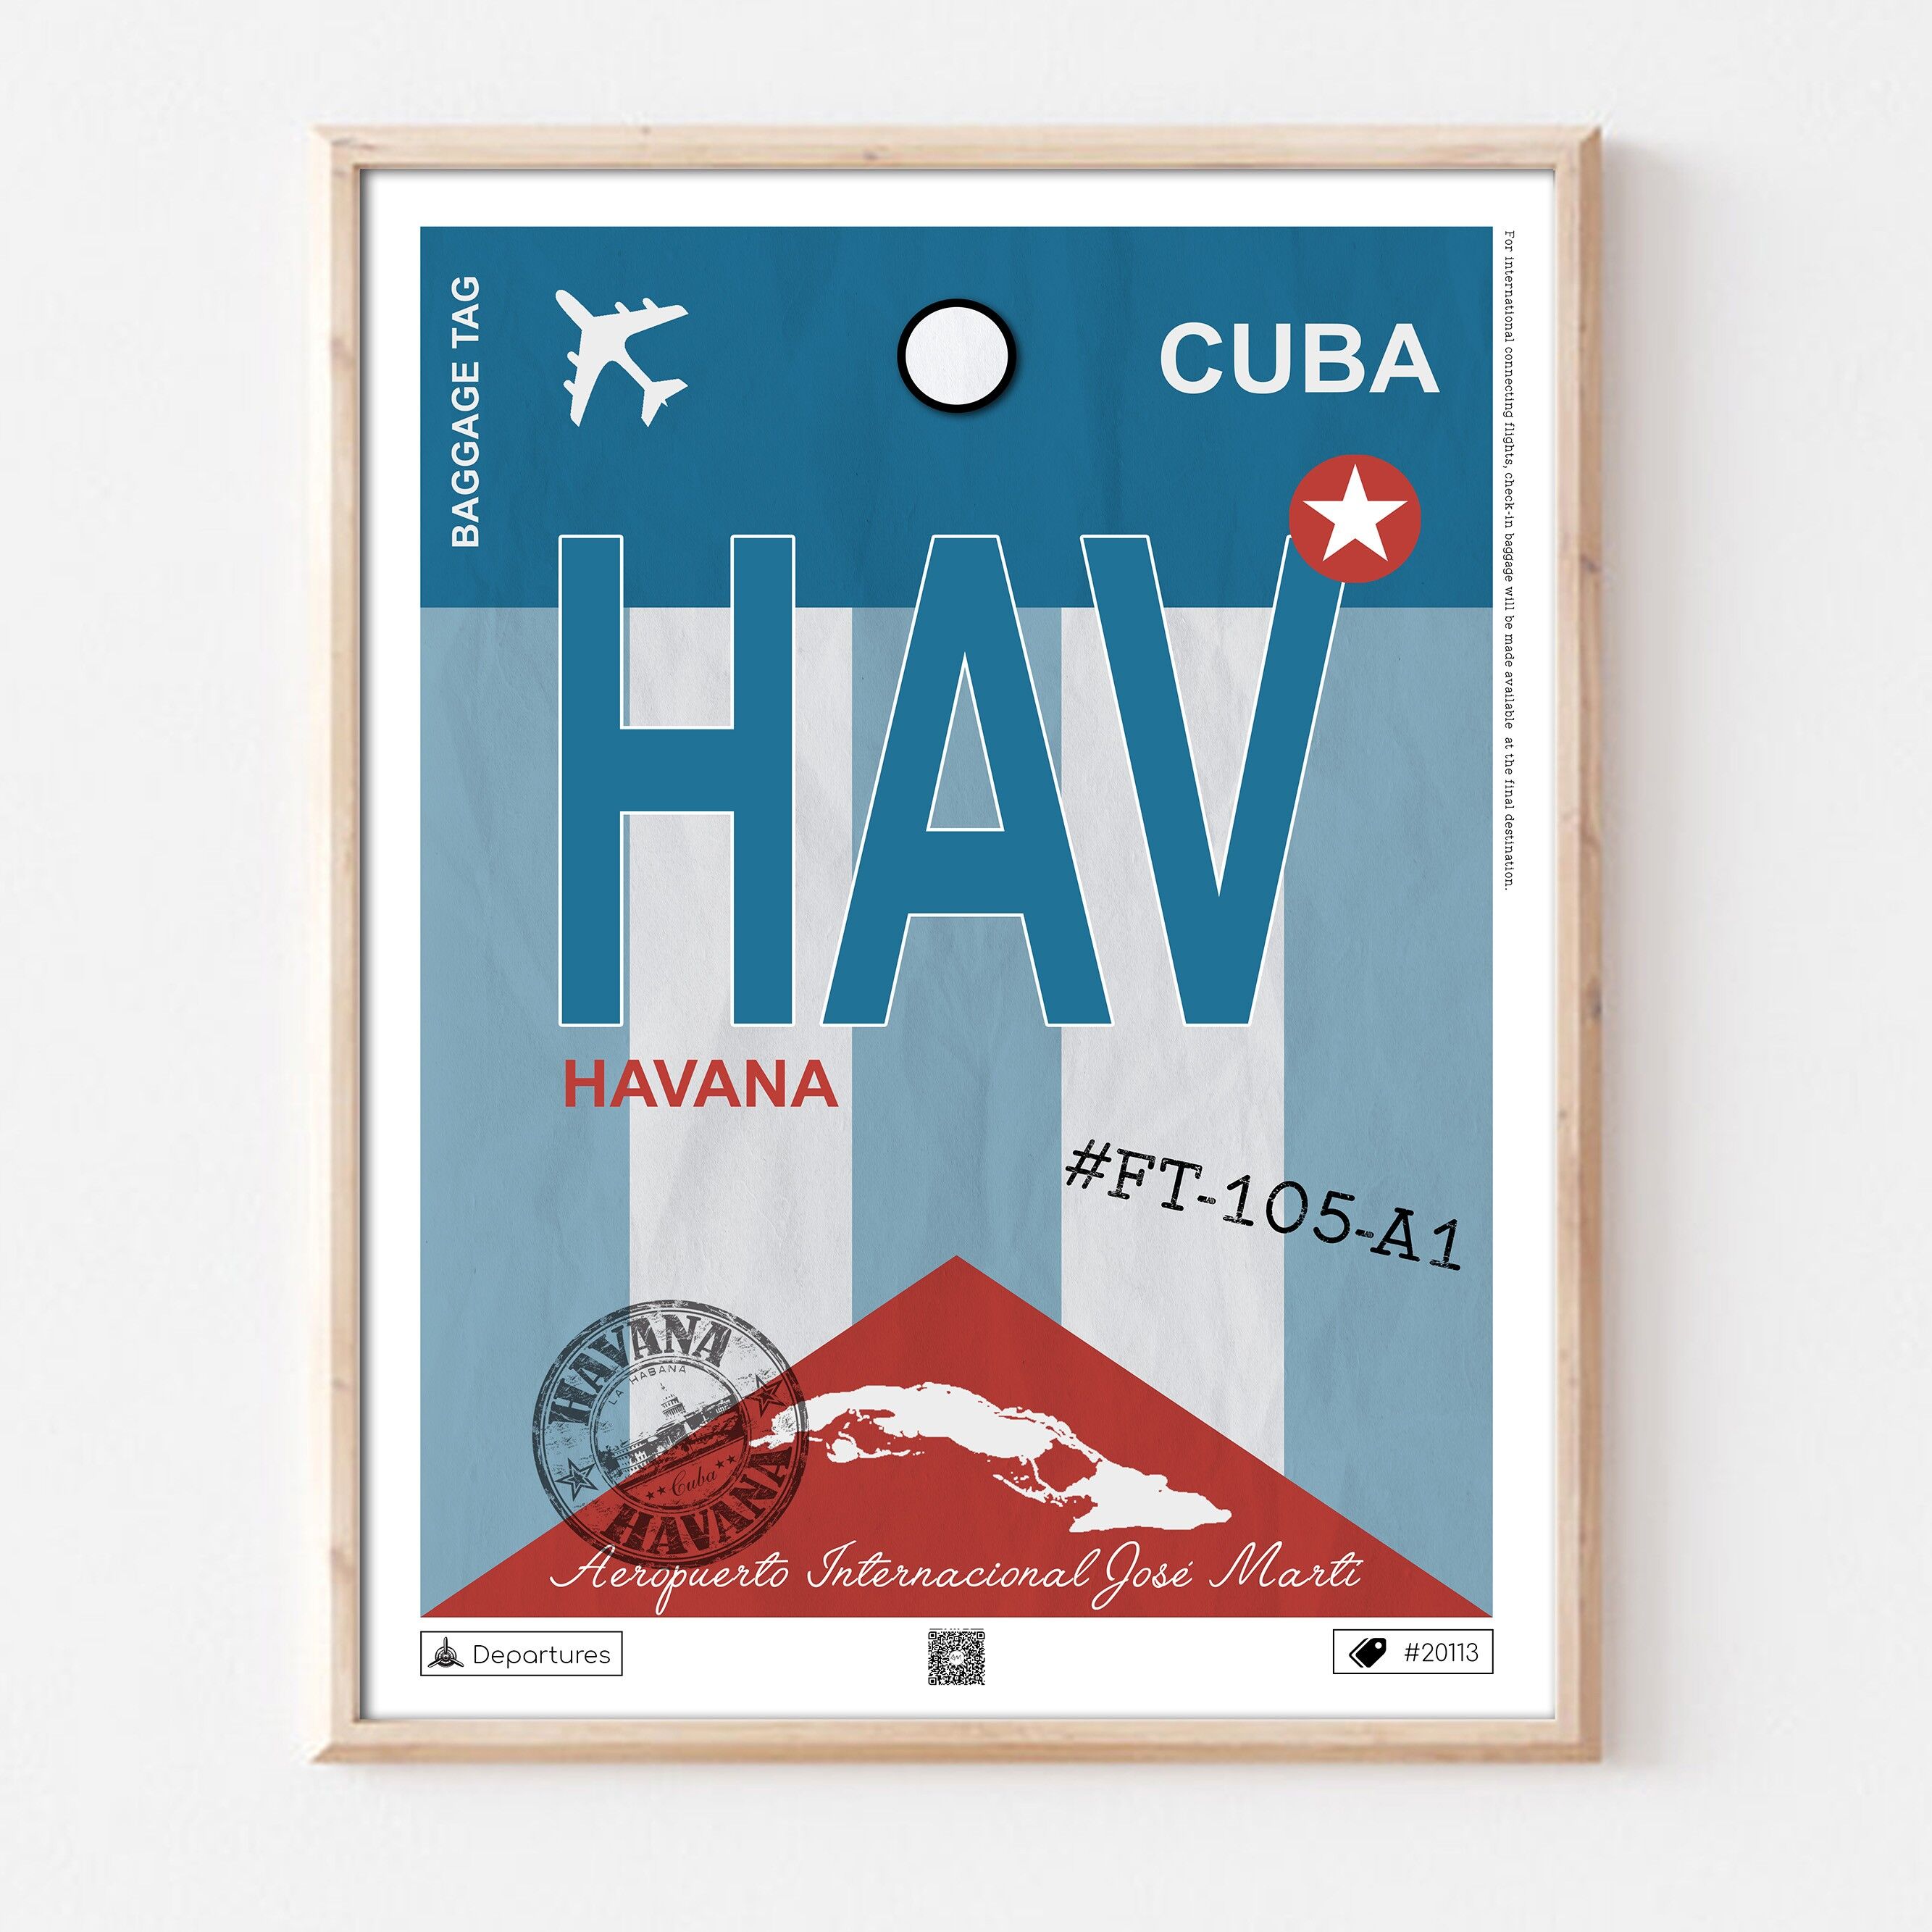 Cartel de destino de la Habana